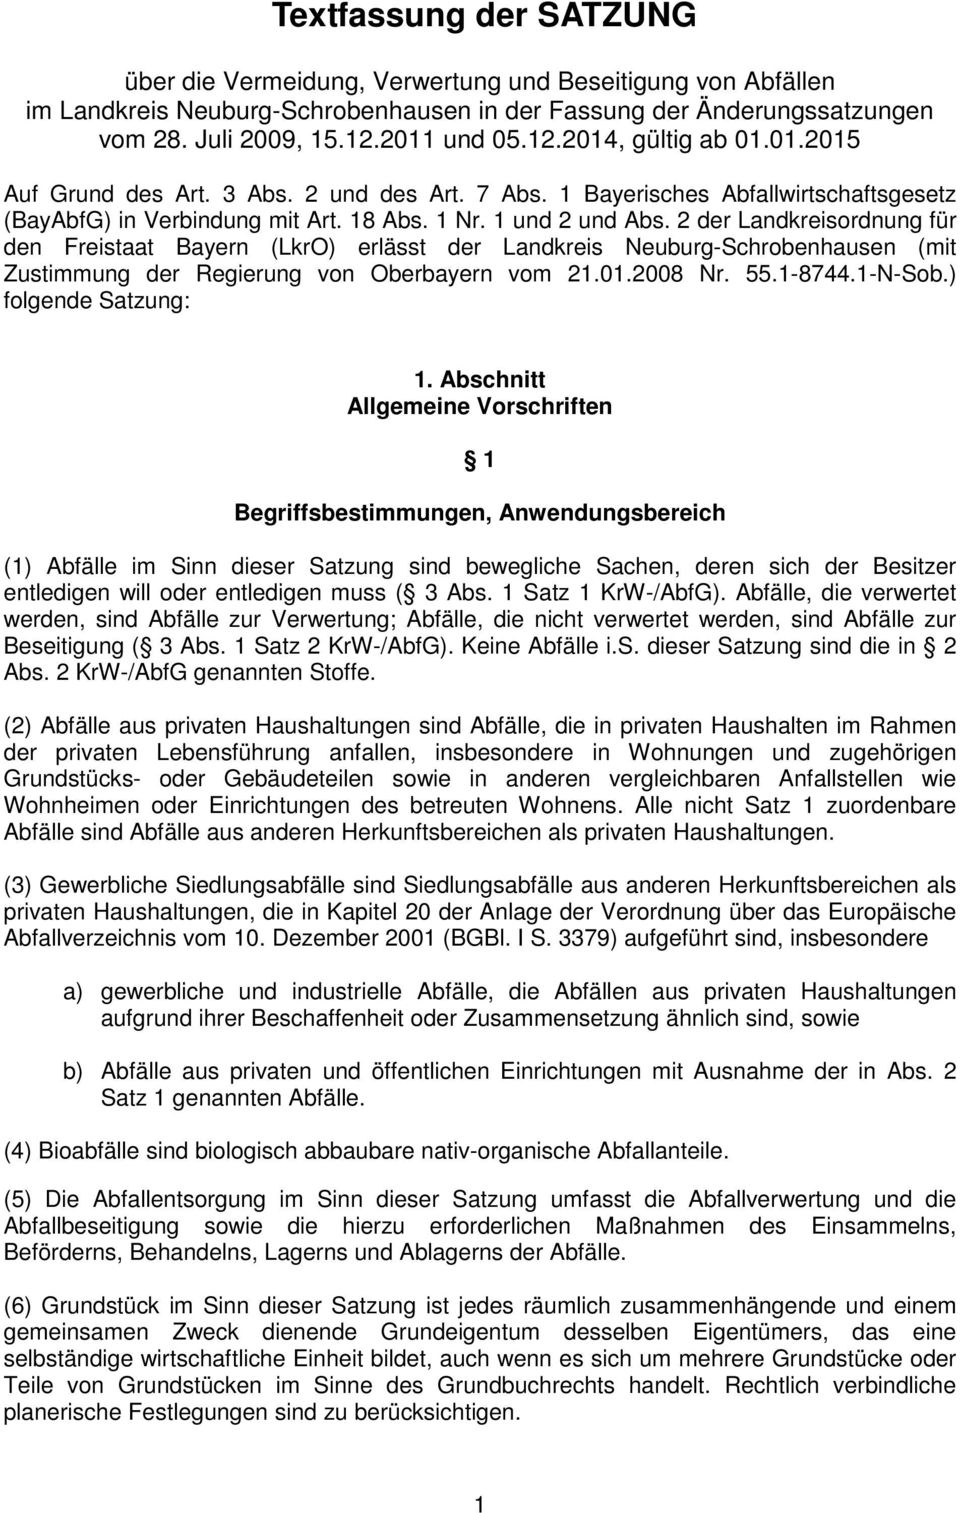 2 der Landkreisordnung für den Freistaat Bayern (LkrO) erlässt der Landkreis Neuburg-Schrobenhausen (mit Zustimmung der Regierung von Oberbayern vom 21.01.2008 Nr. 55.1-8744.1-N-Sob.